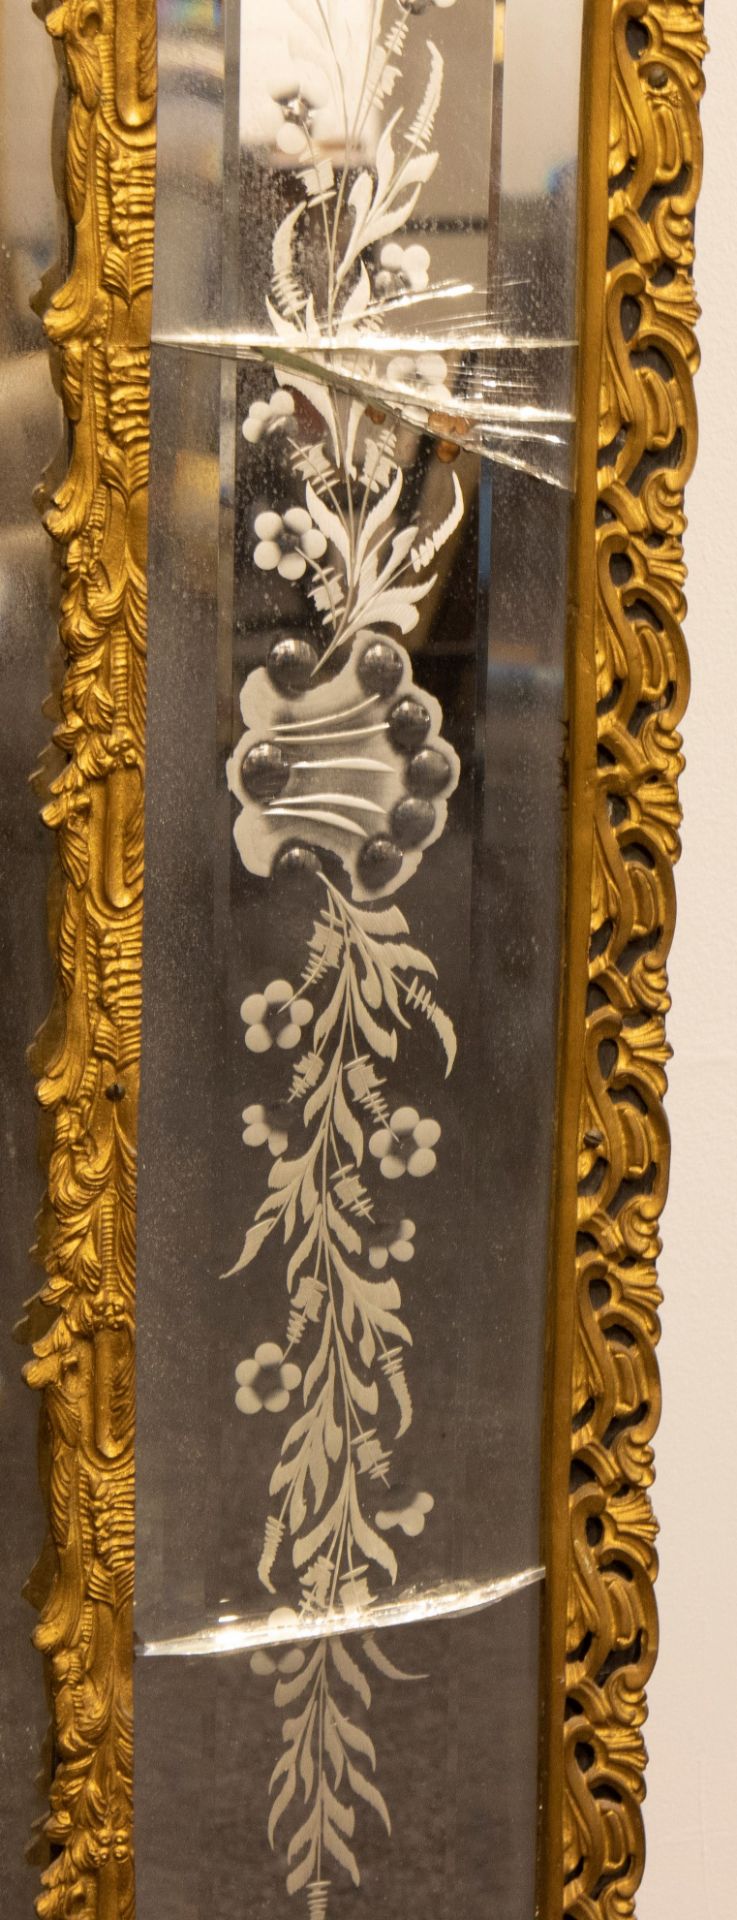 Antique Rococo style bronze mirror with cut glass motifs - Bild 3 aus 4